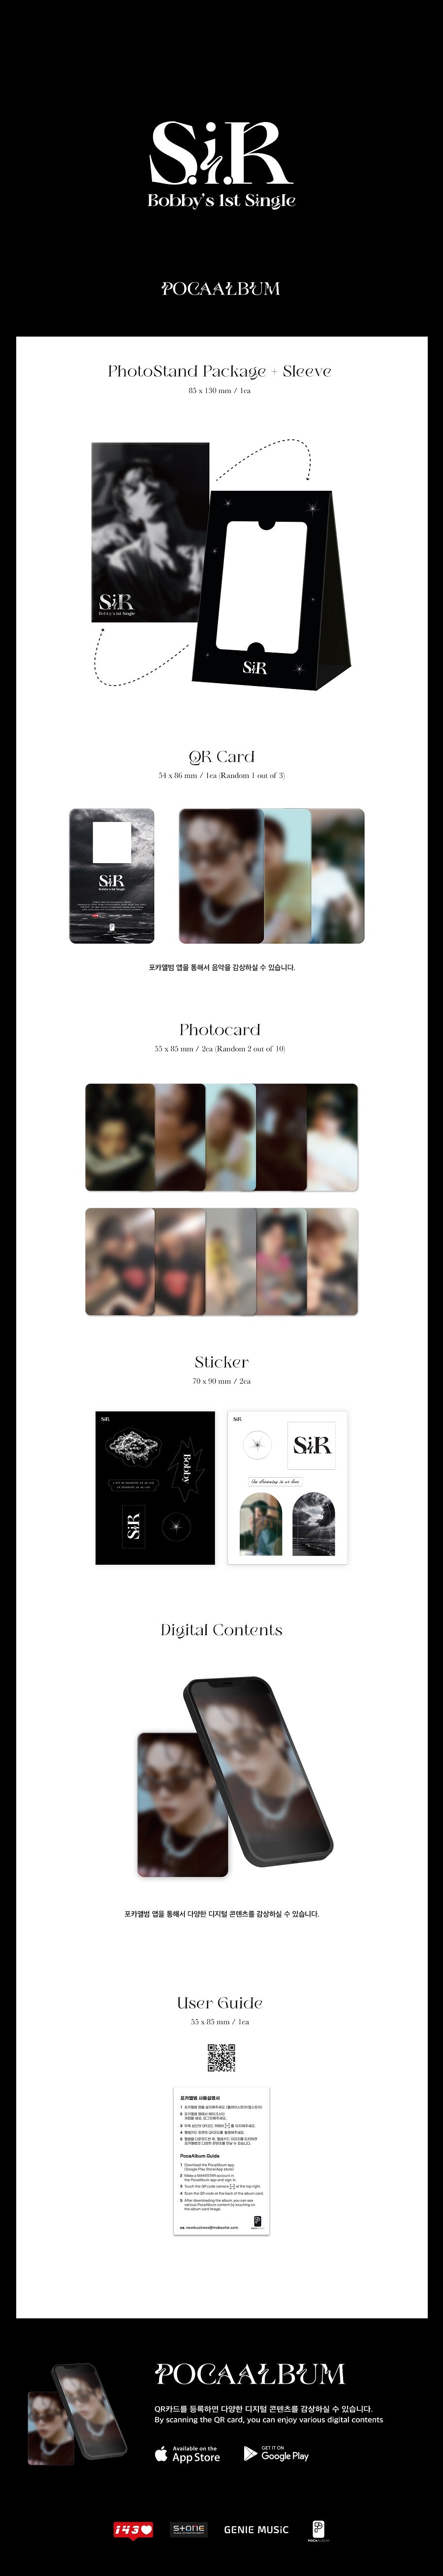 iKON: BOBBY Solo Single Album Vol. 1 - S.i.R (POCA Album)